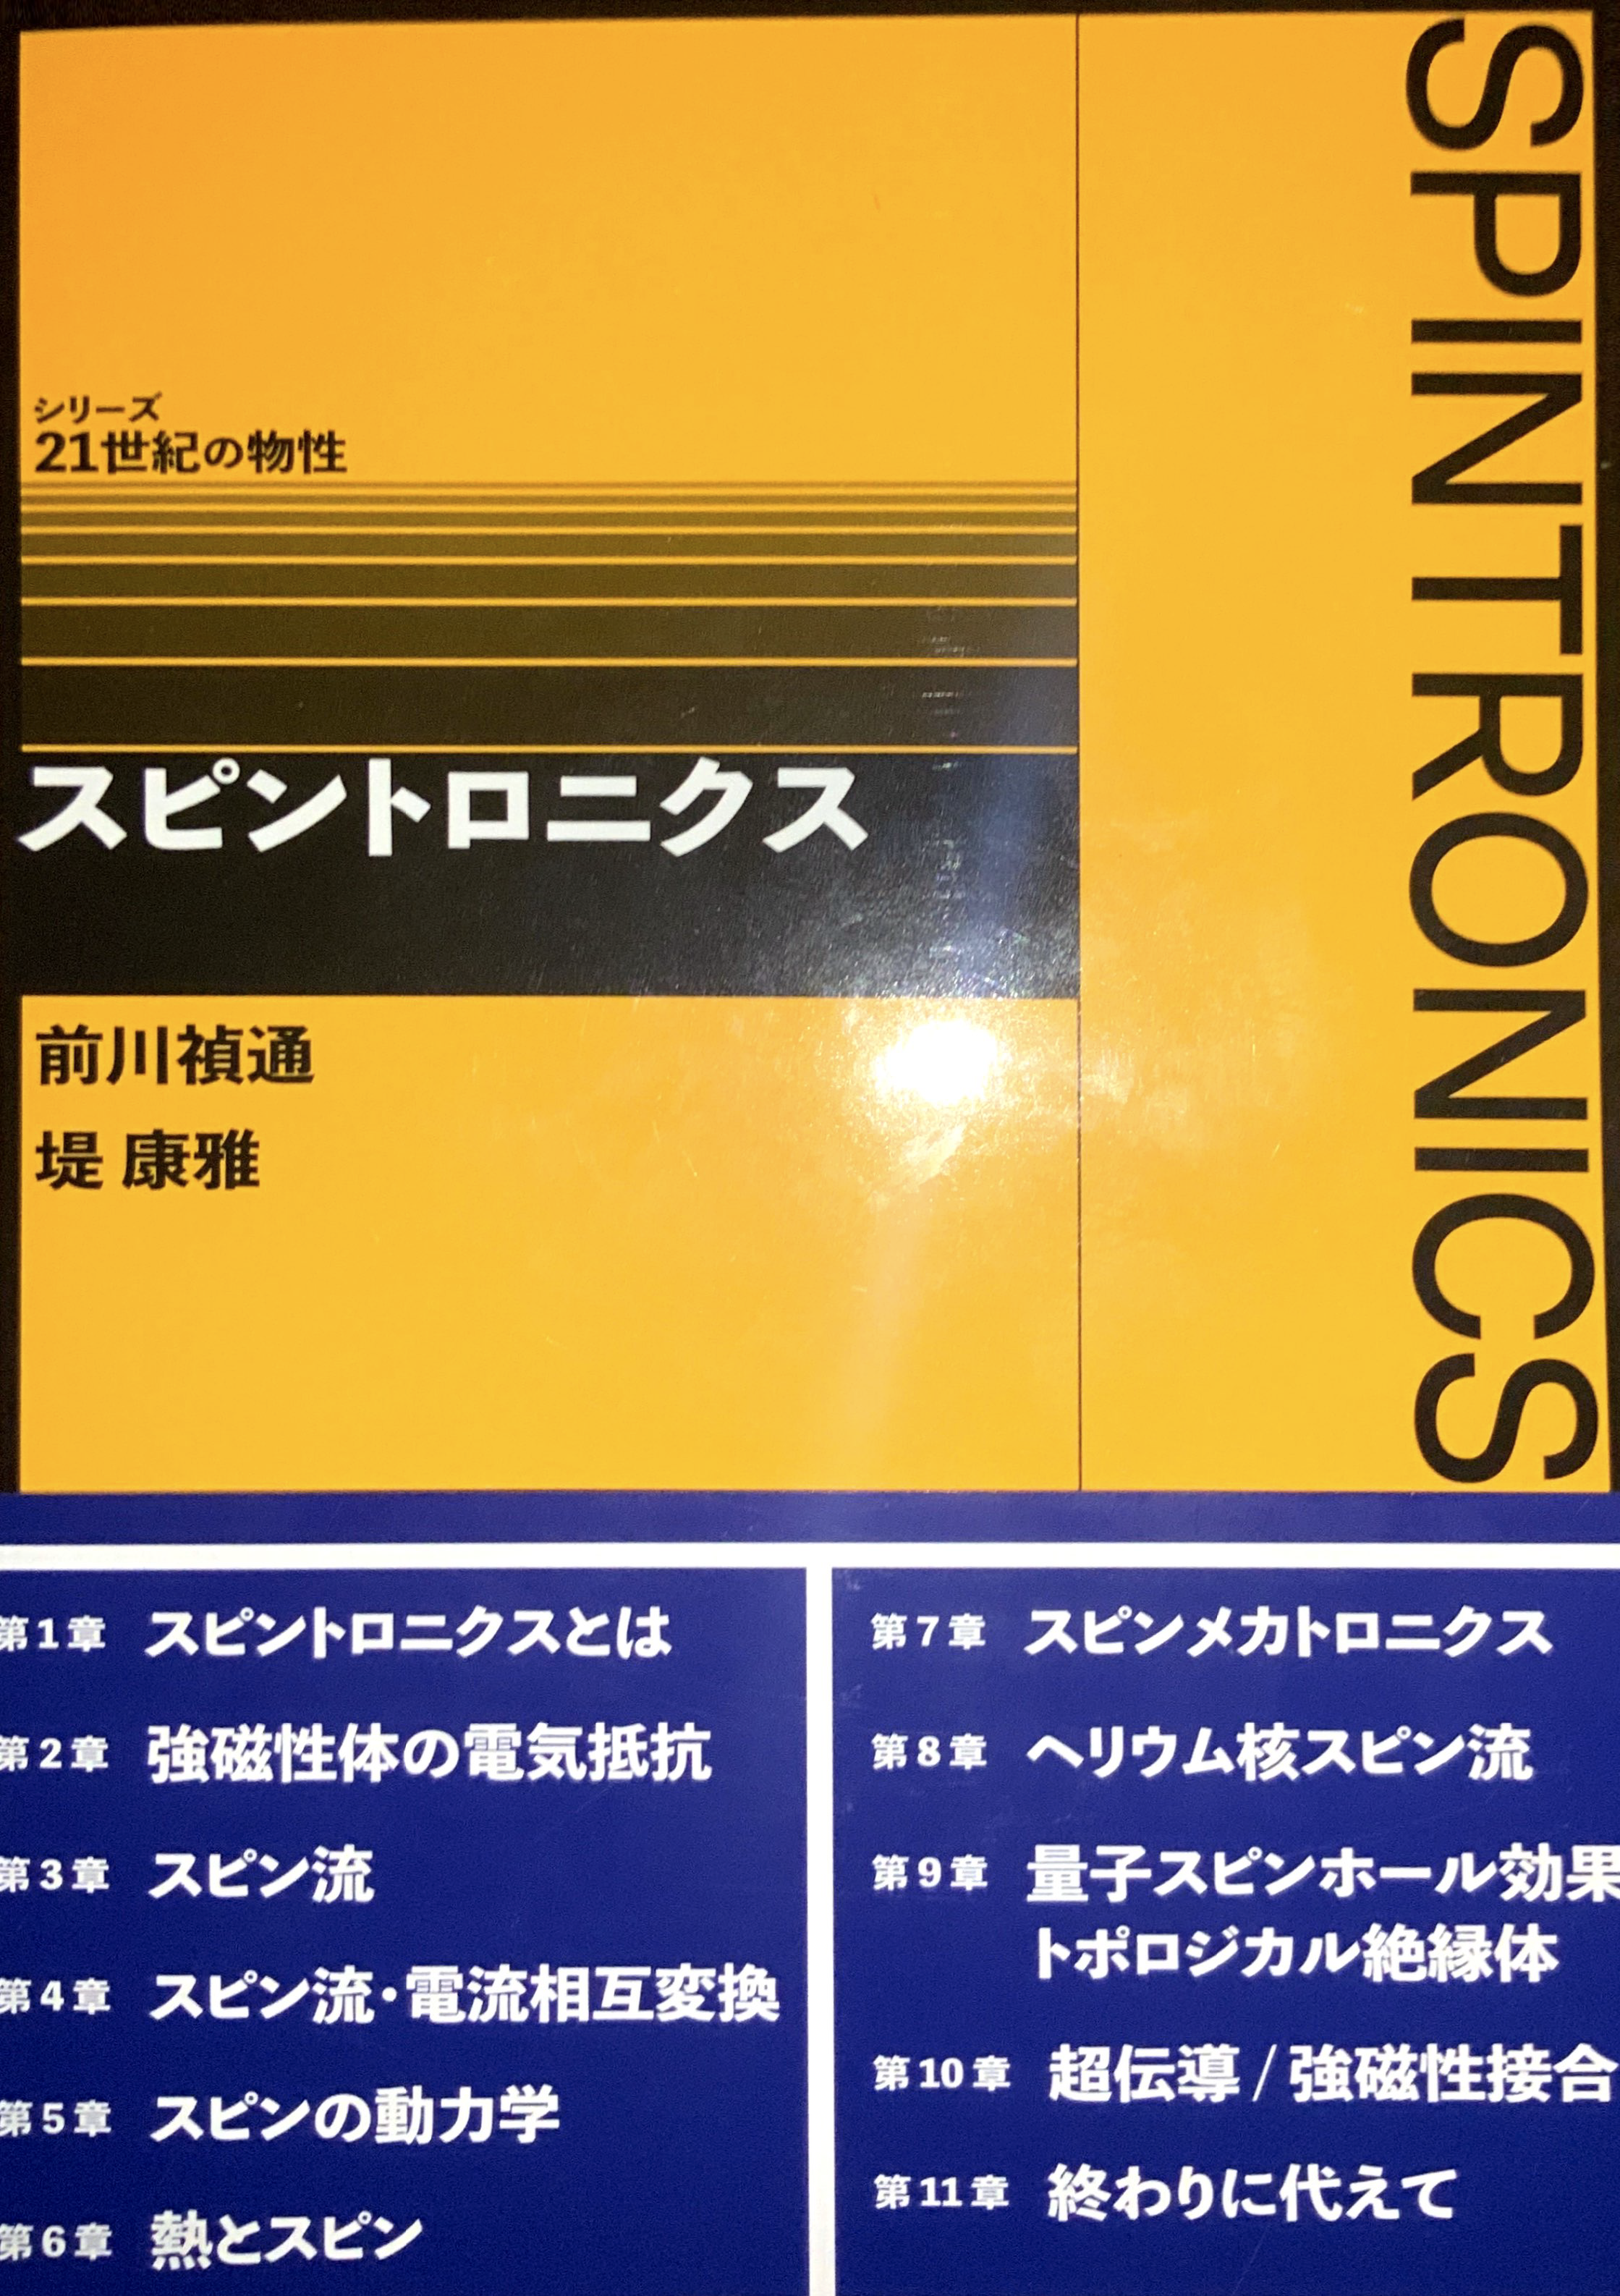 『スピントロニクス』(日本評論社、2019年)